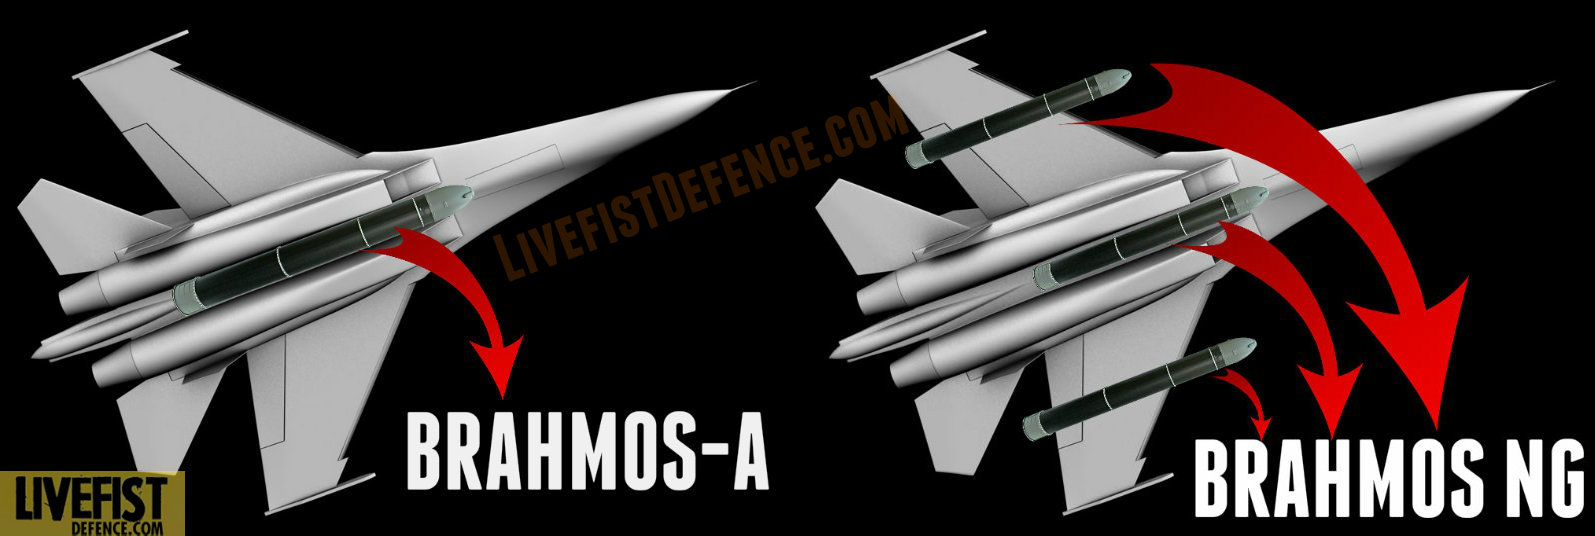 Индийские истребители су-30МКИ смогут применять до трех ракет BrahMos-NG